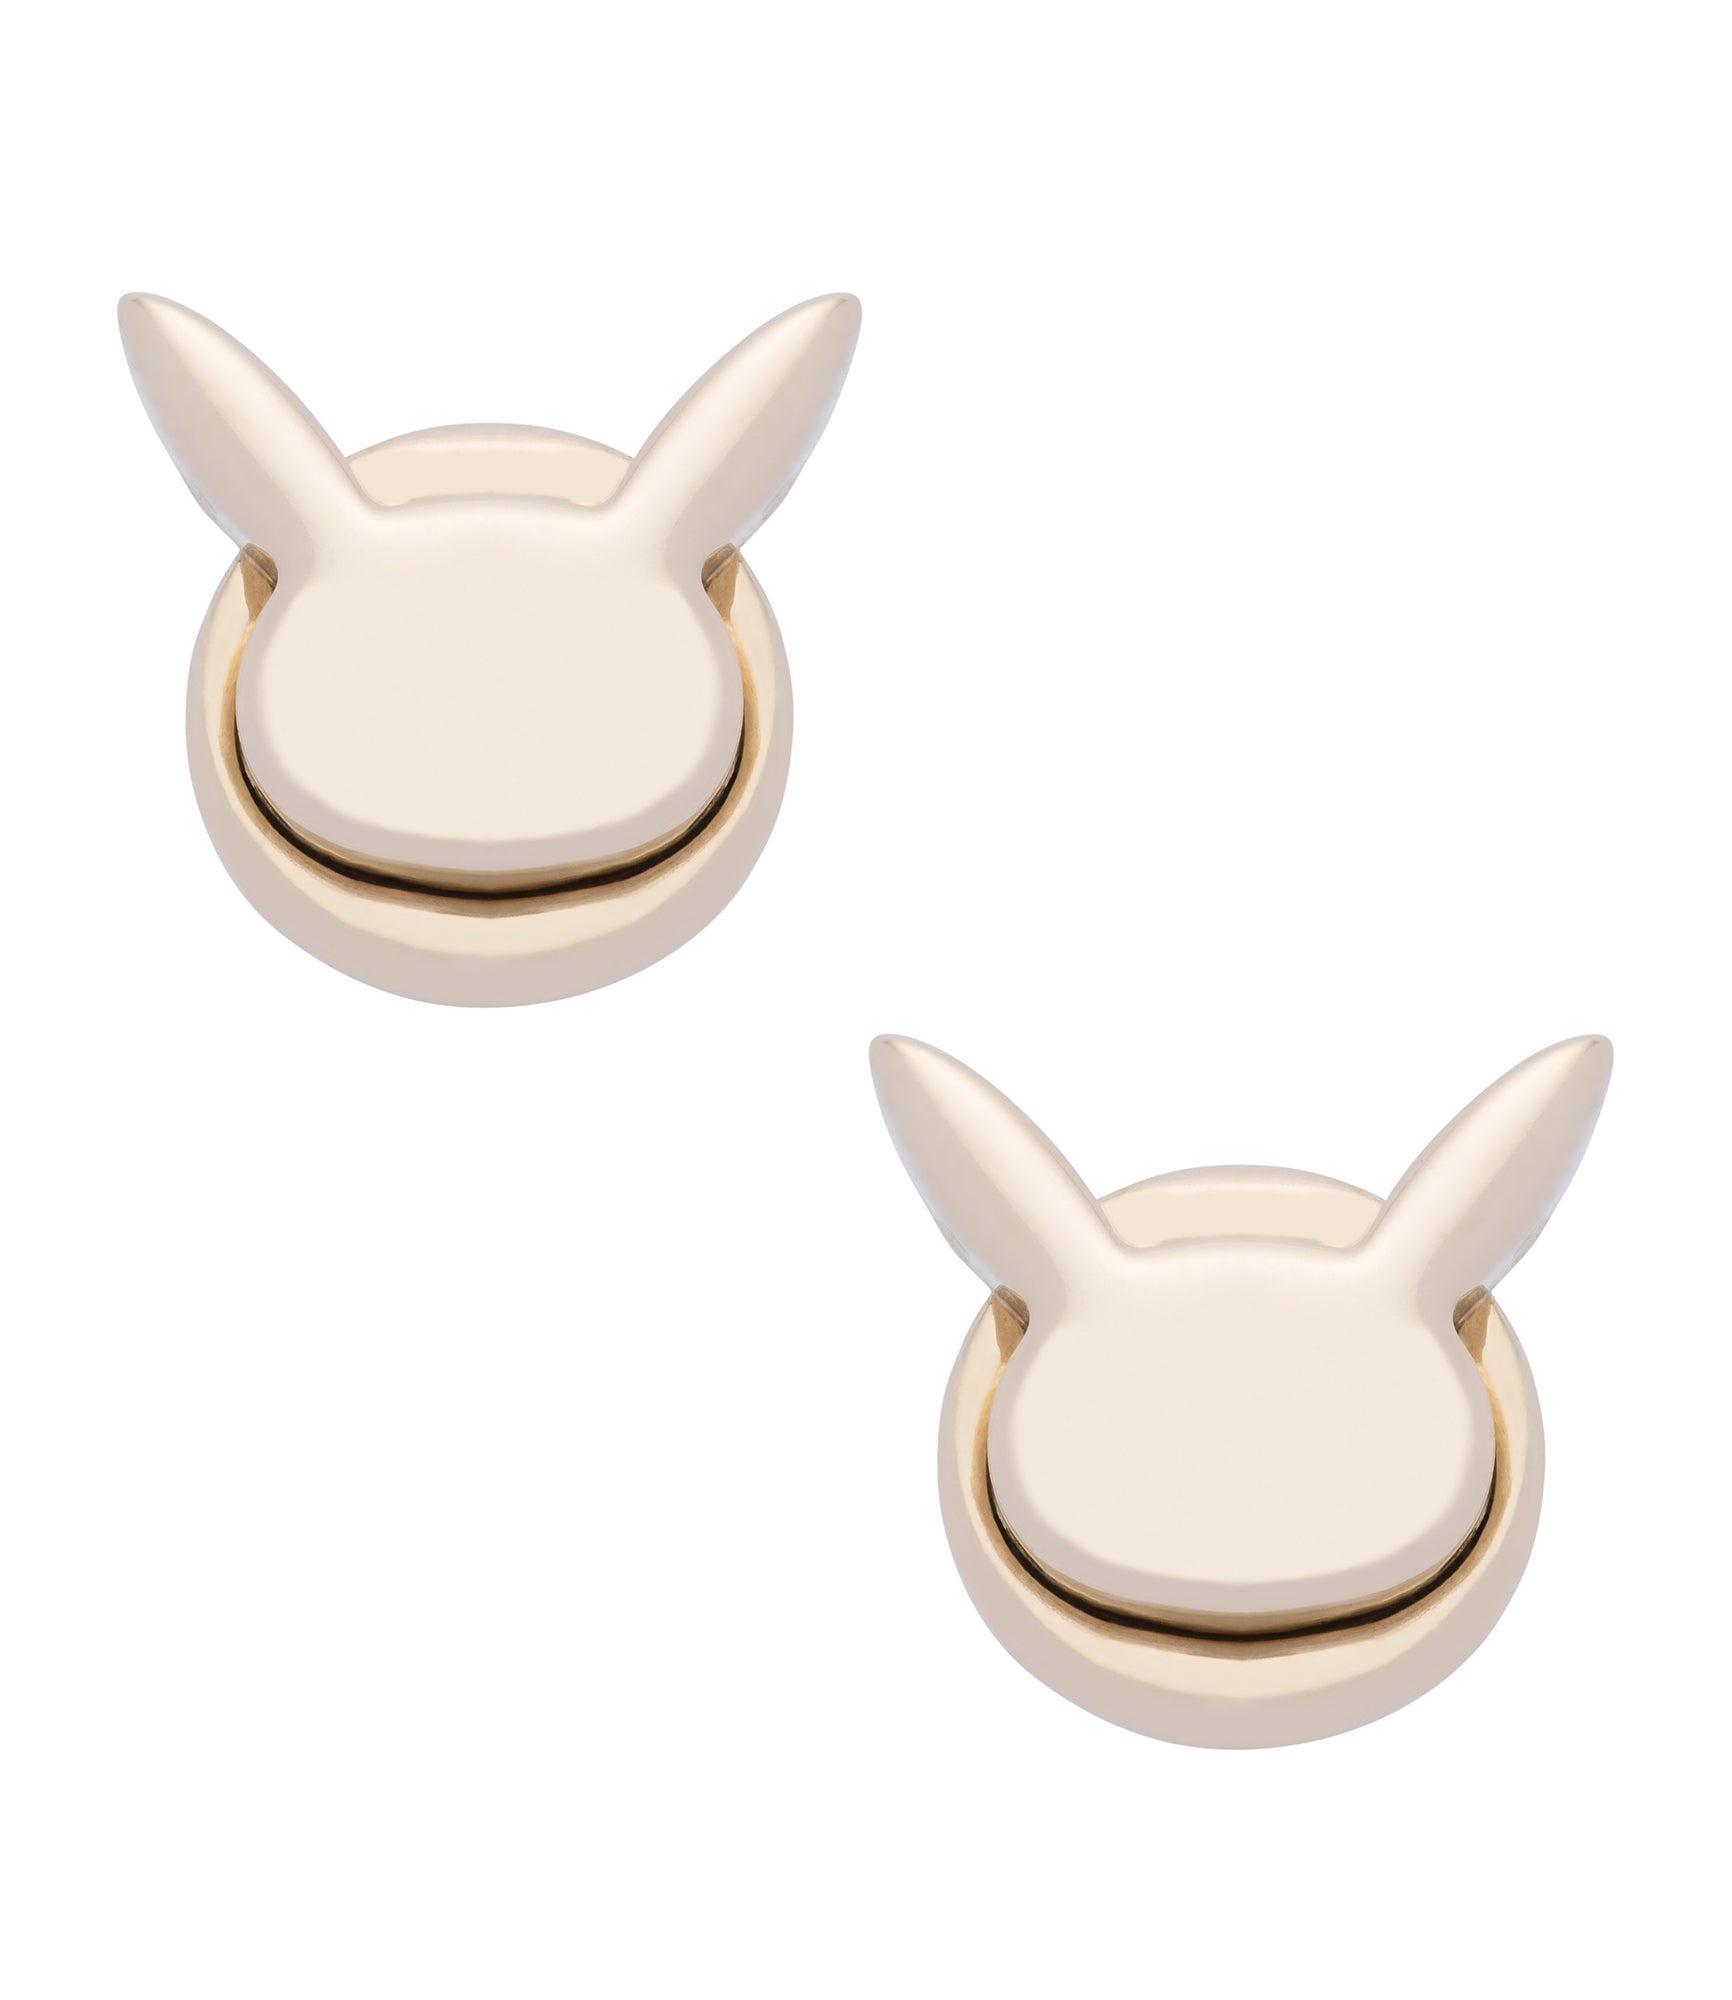 Pikachu earrings - 1